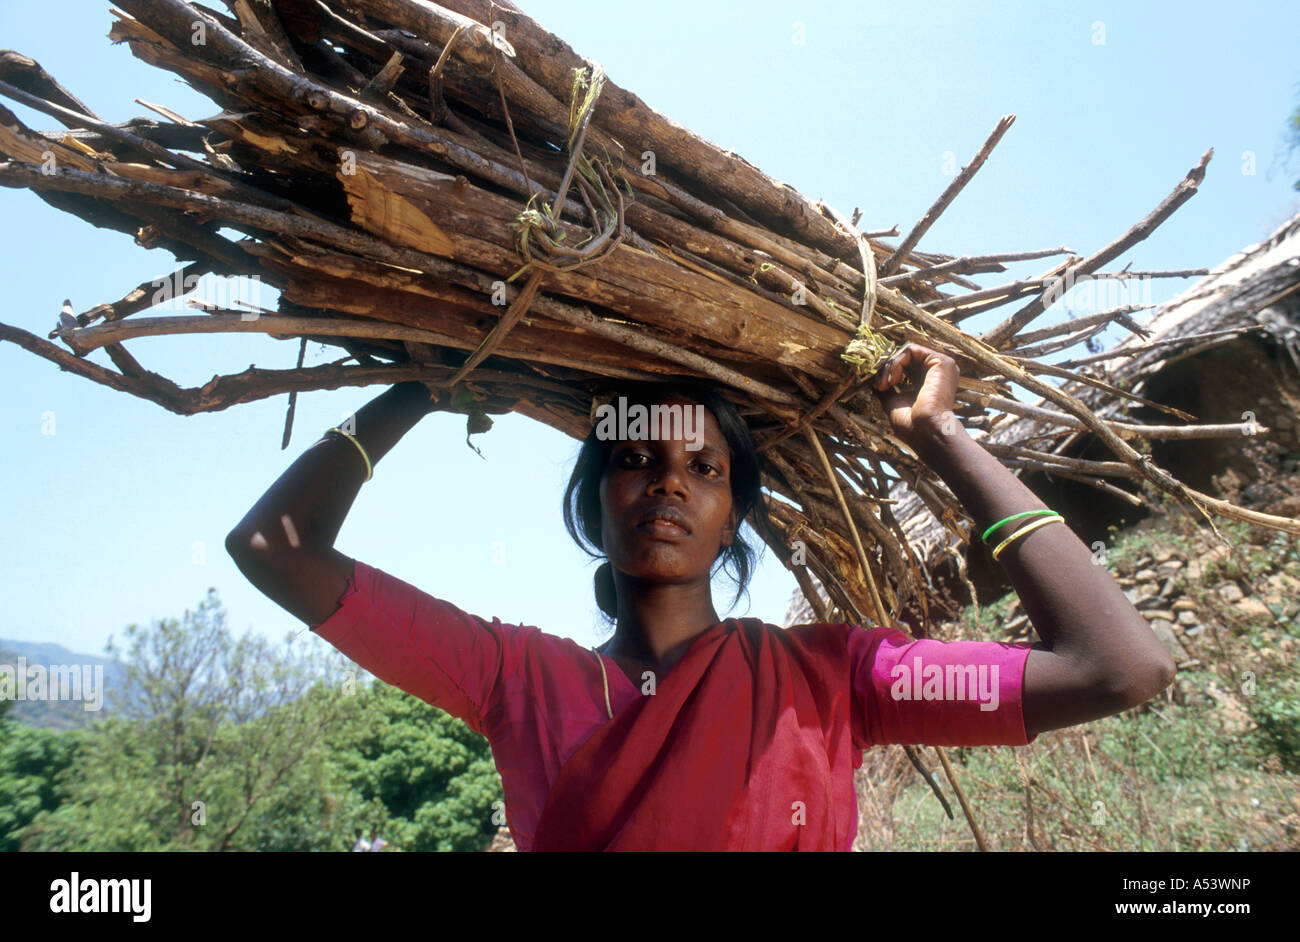 Painet ha2214 5000 donna india schiavitù paliyar triabl legato di lavoro operaio paese nazione in via di sviluppo dal punto di vista economico Foto Stock